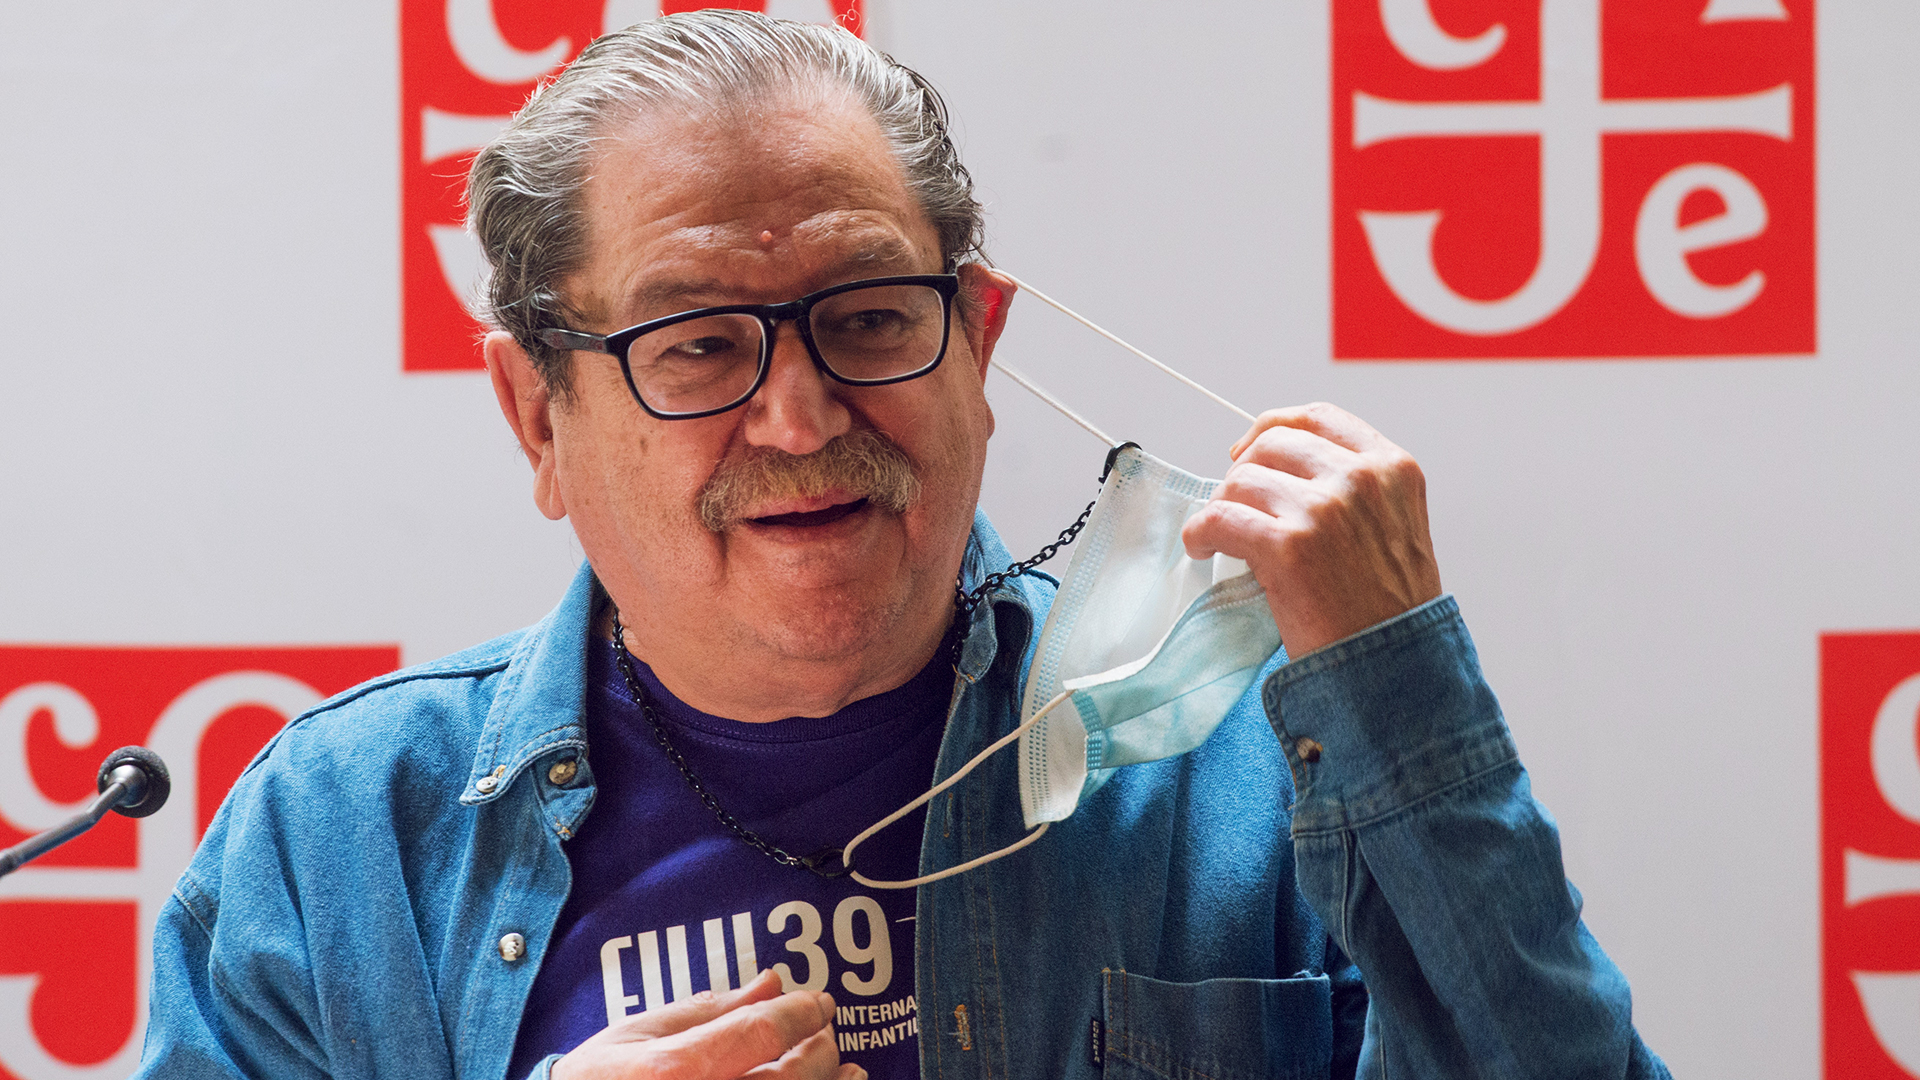 el escritor, historiador y literato Paco Ignacio Taibo II se quita la mascarilla durante un evento